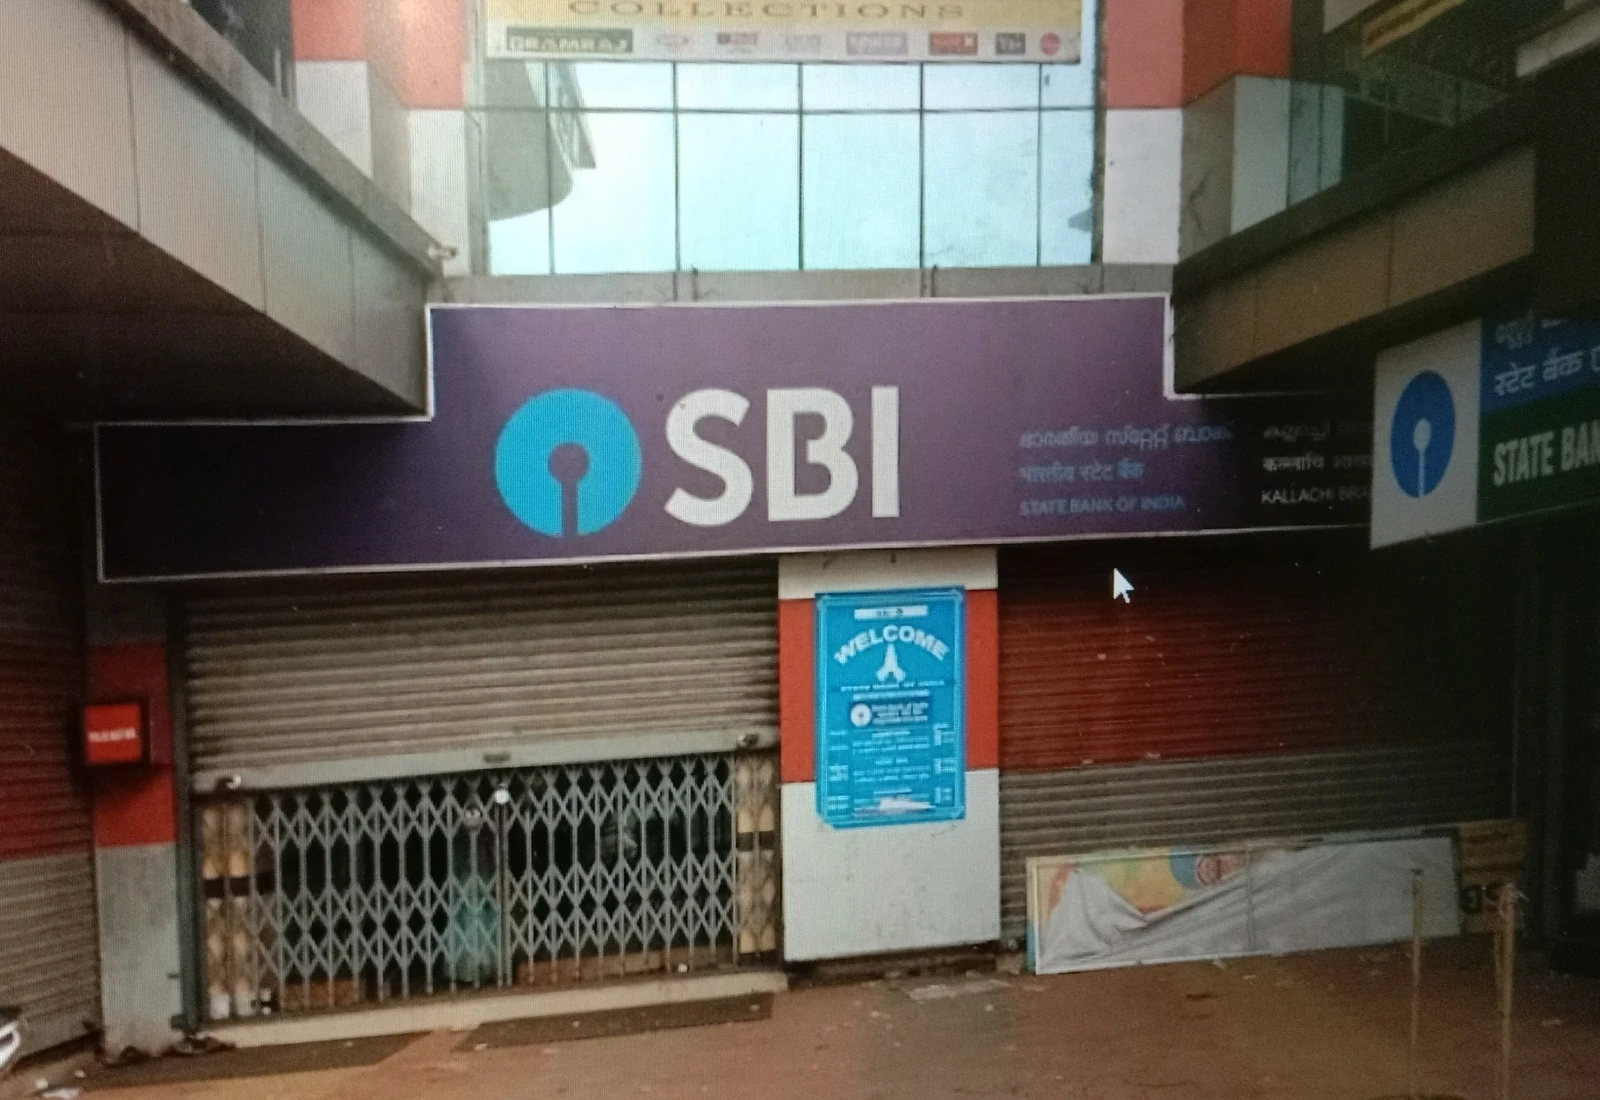 SBI Bank Kallachi